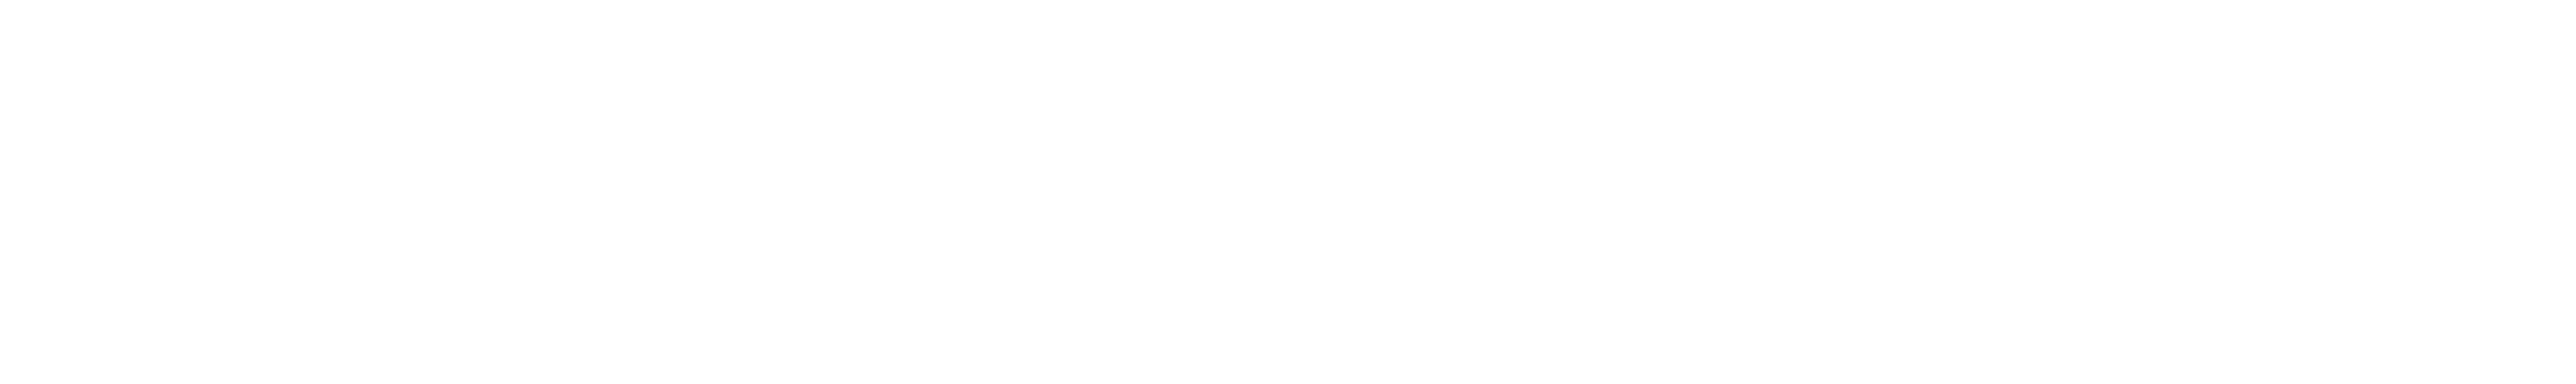 crate and barrel logo